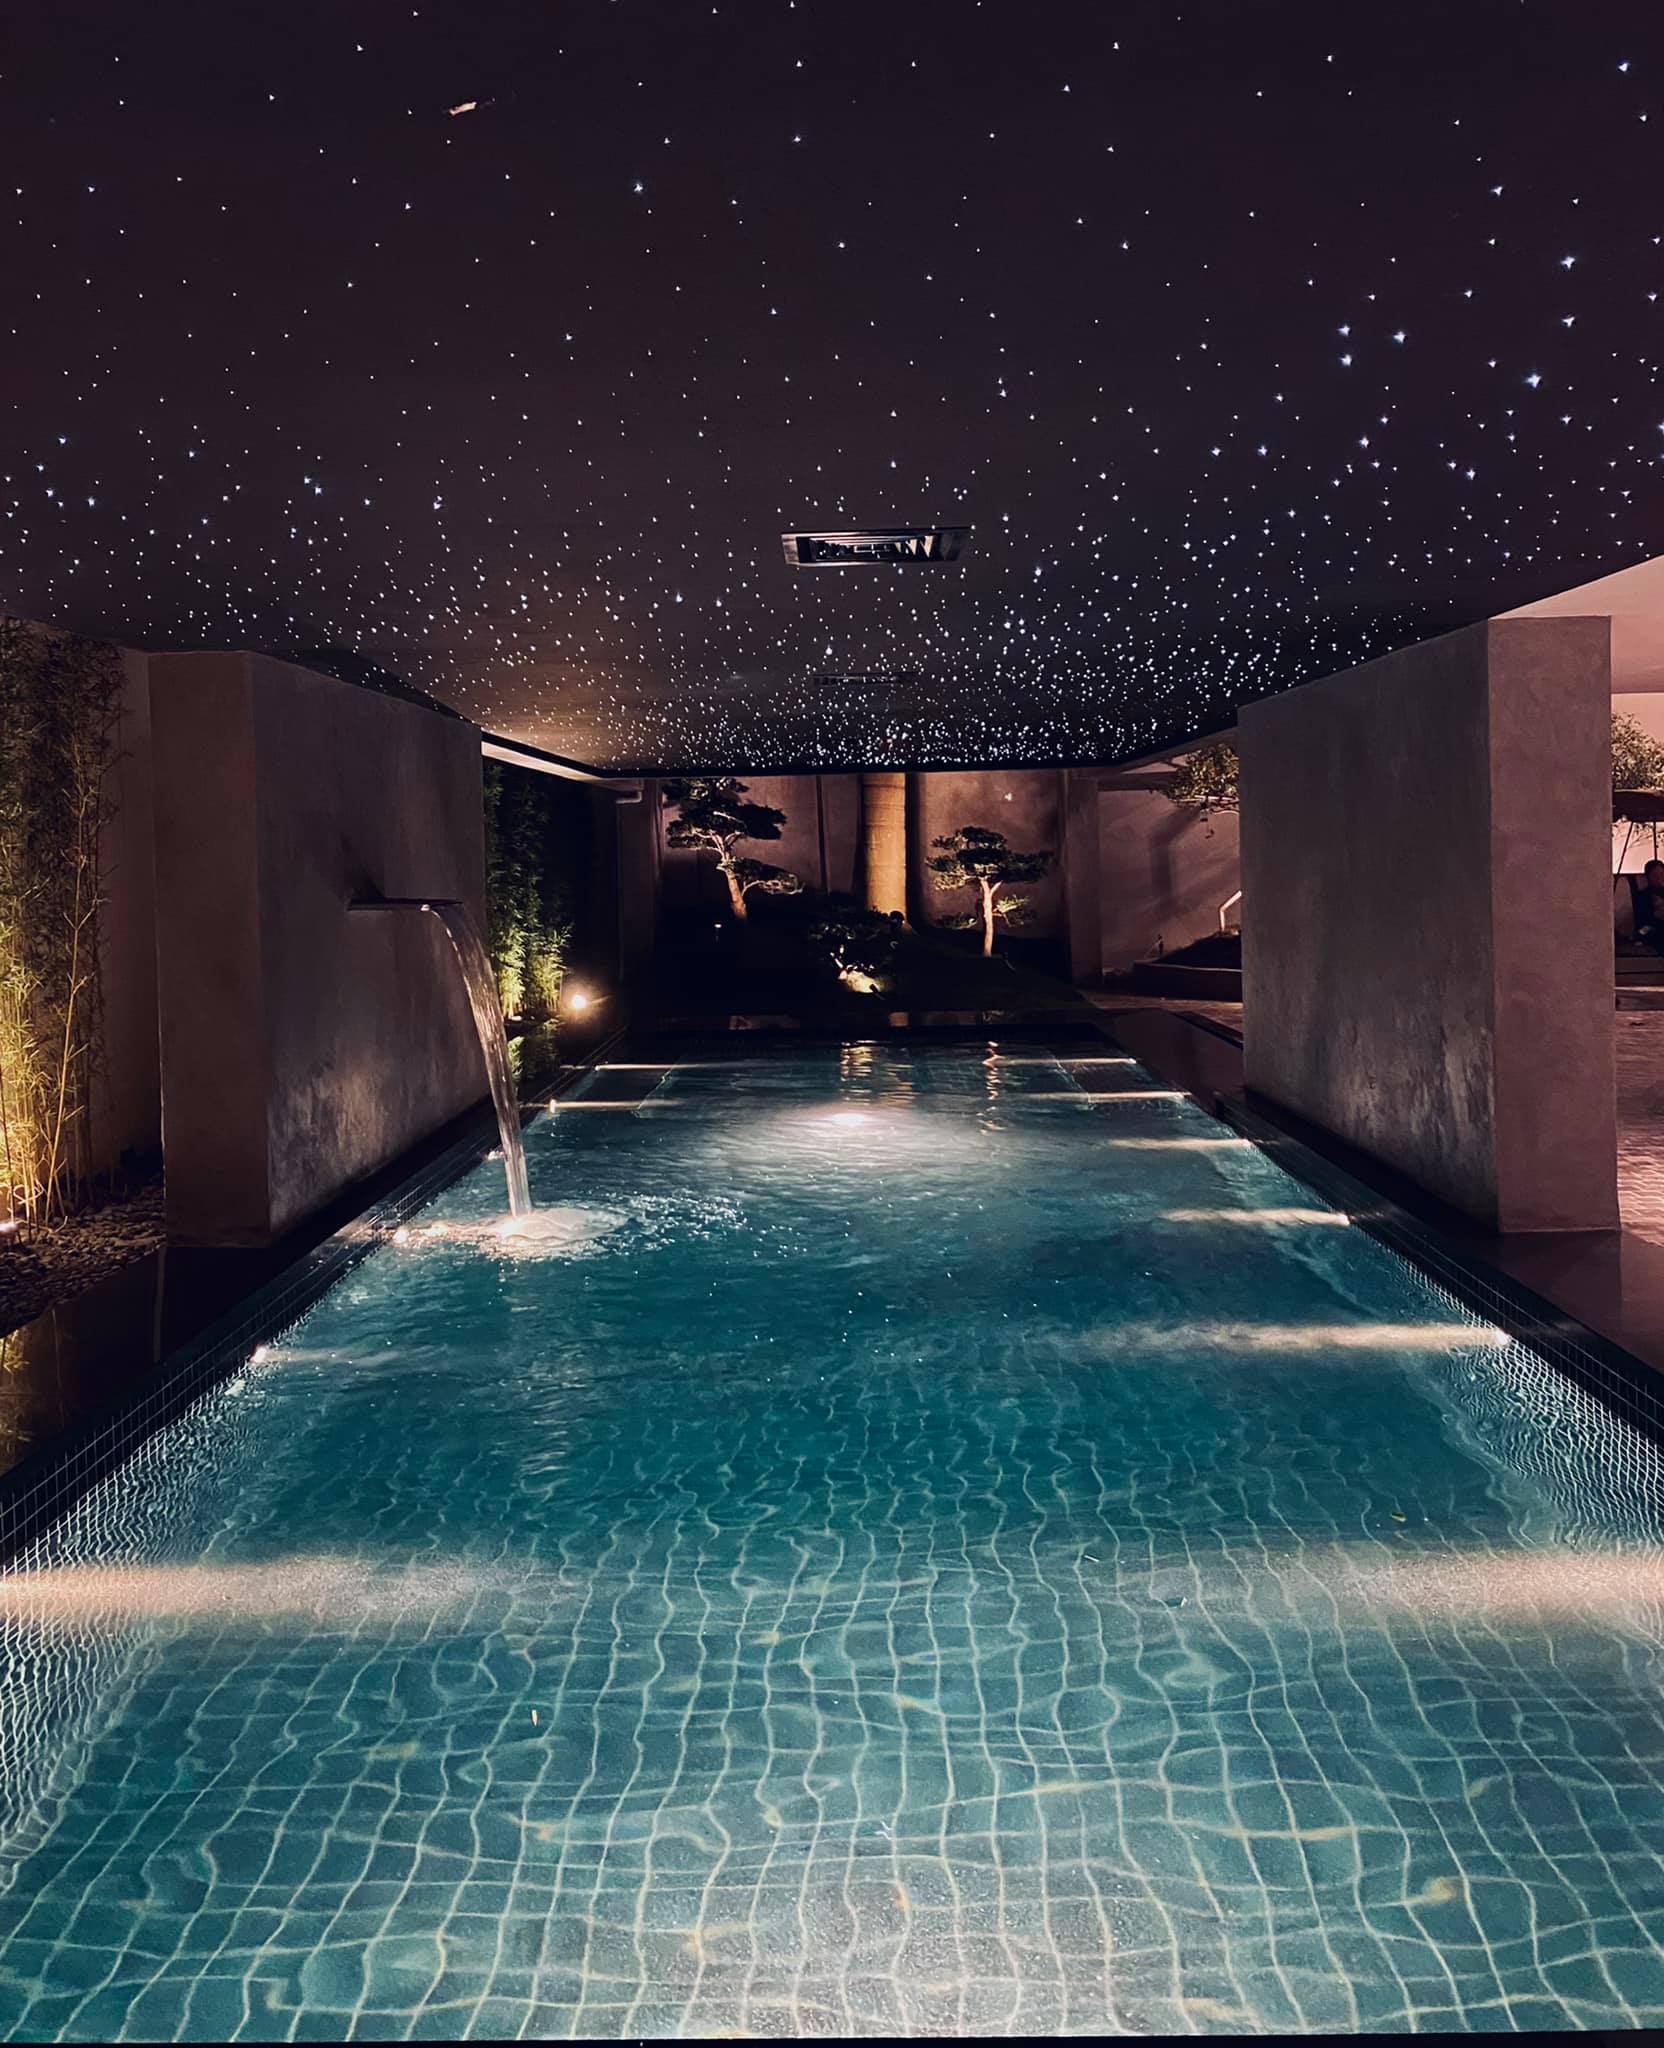 Dù là bể bơi trong nhà nhưng thiết kế trần giả sao trời ấn tượng khiến người nhìn tưởng như đang check-in ở resort.